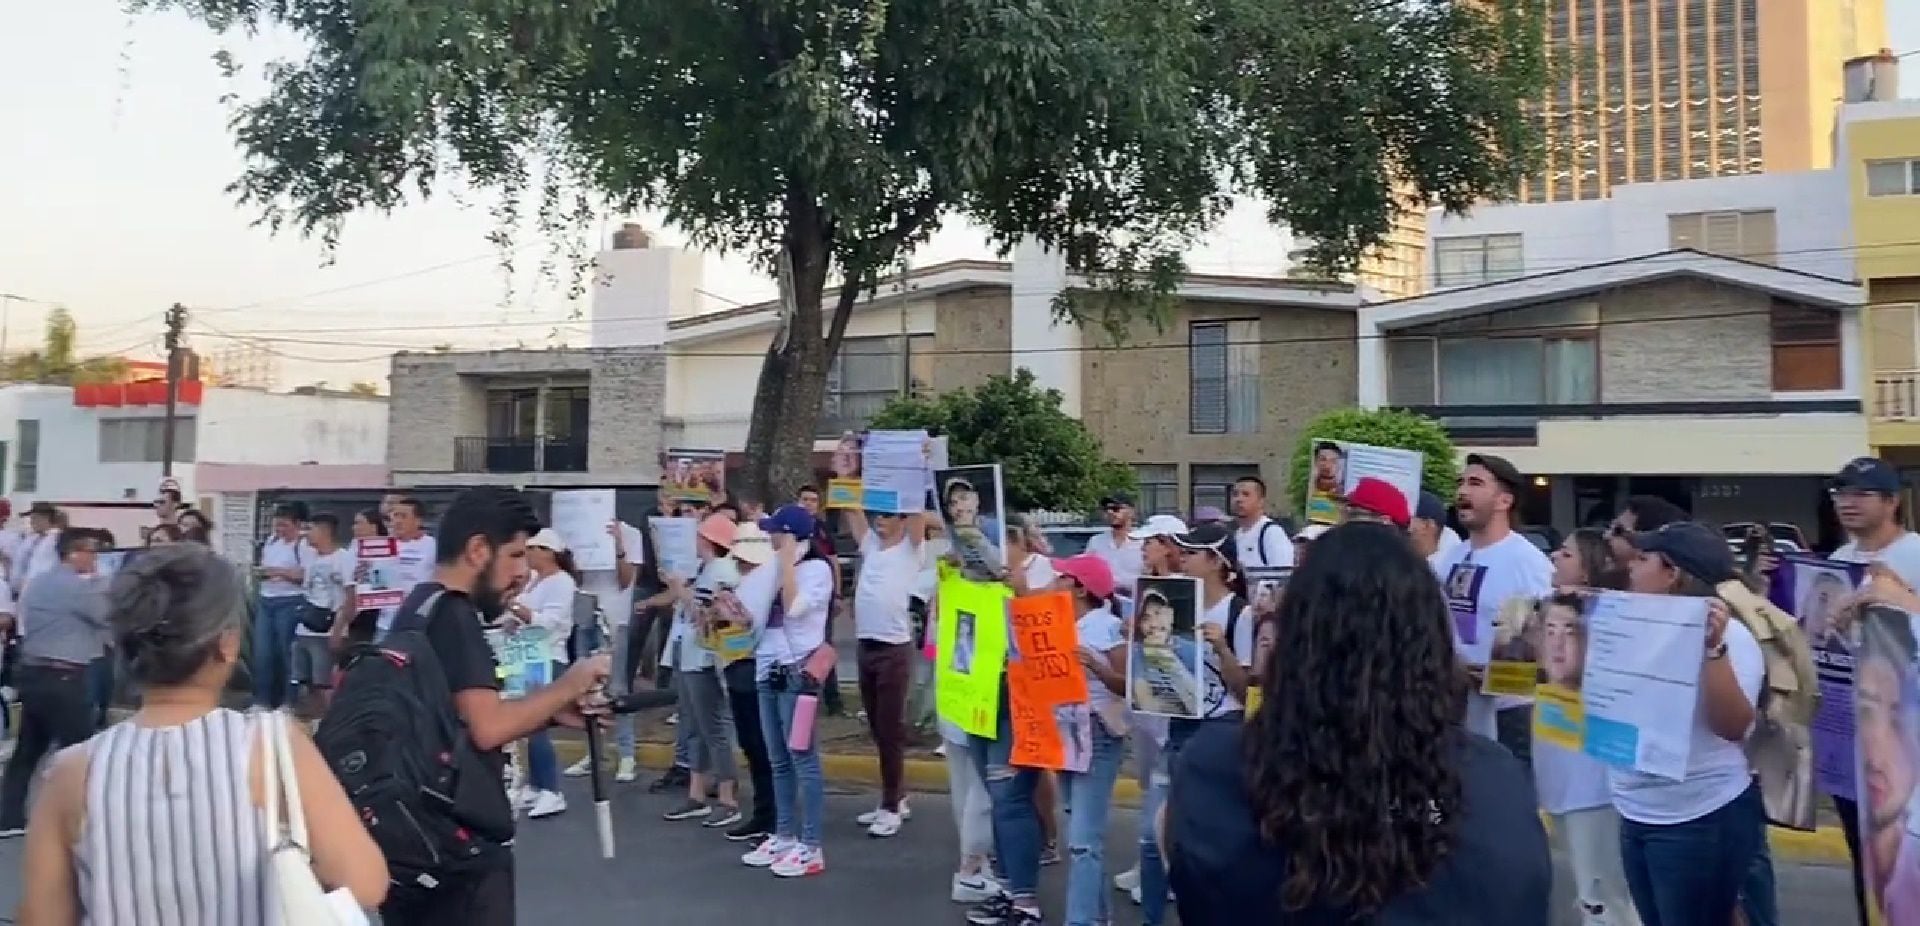 El 26 de mayo, familiares y amigos de los desaparecidos, un aproximado de 150 personas, marcharon de la Glorieta de los Niños Héroes rumbo a Casa Jalisco para exigir avance en la investigación.
(Captura de pantalla)